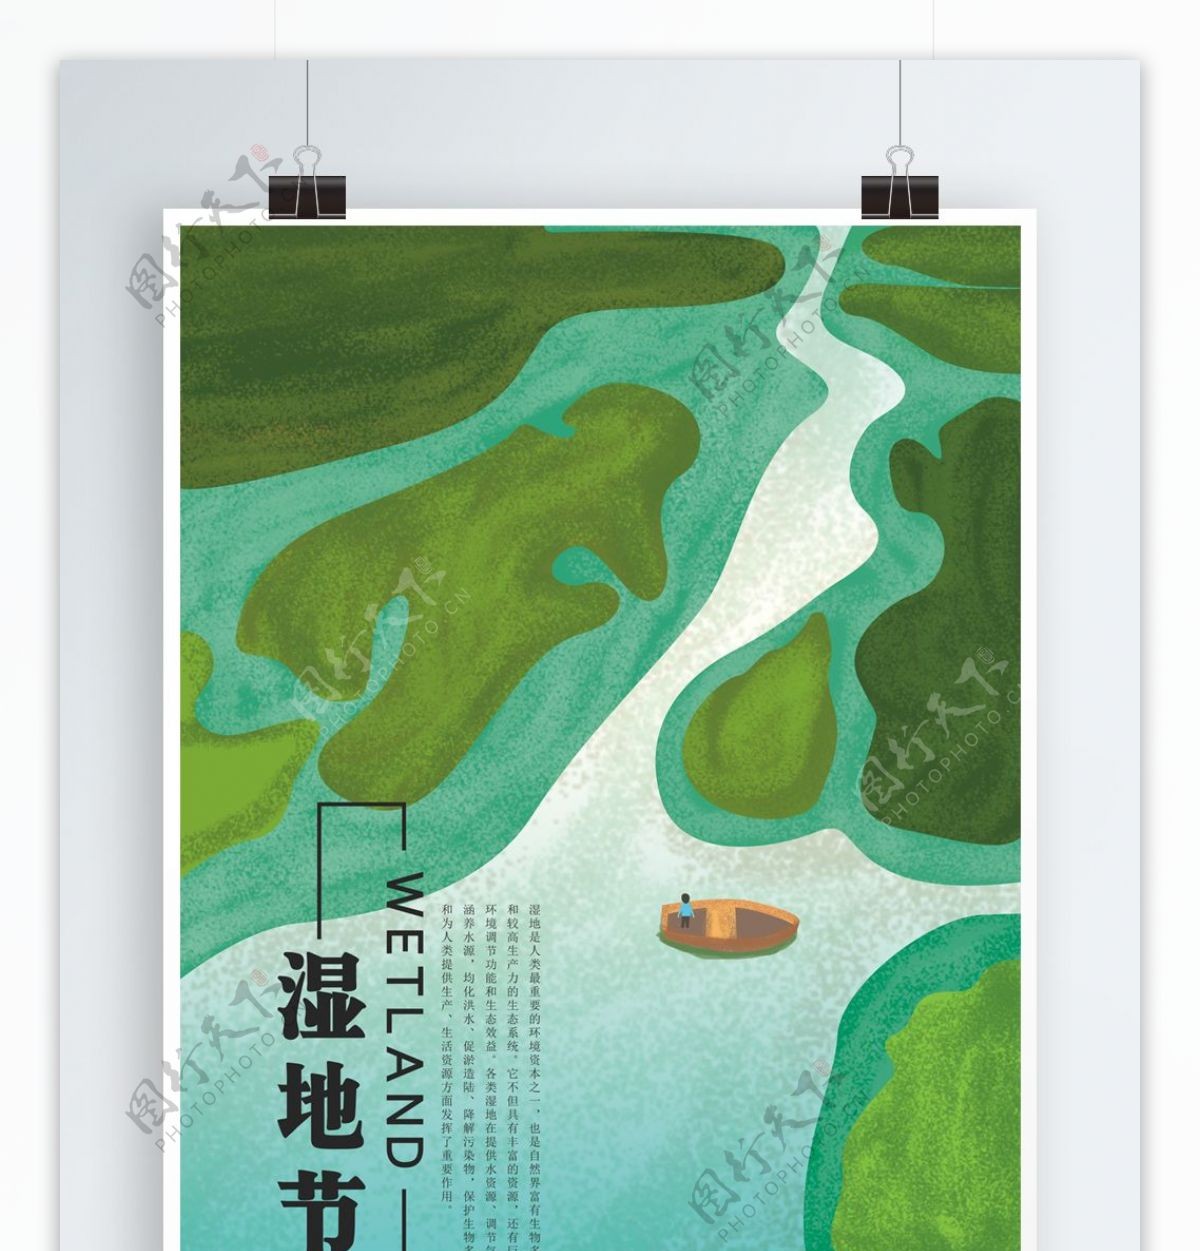 原创插画湿地节保护生态环境宣传节日海报